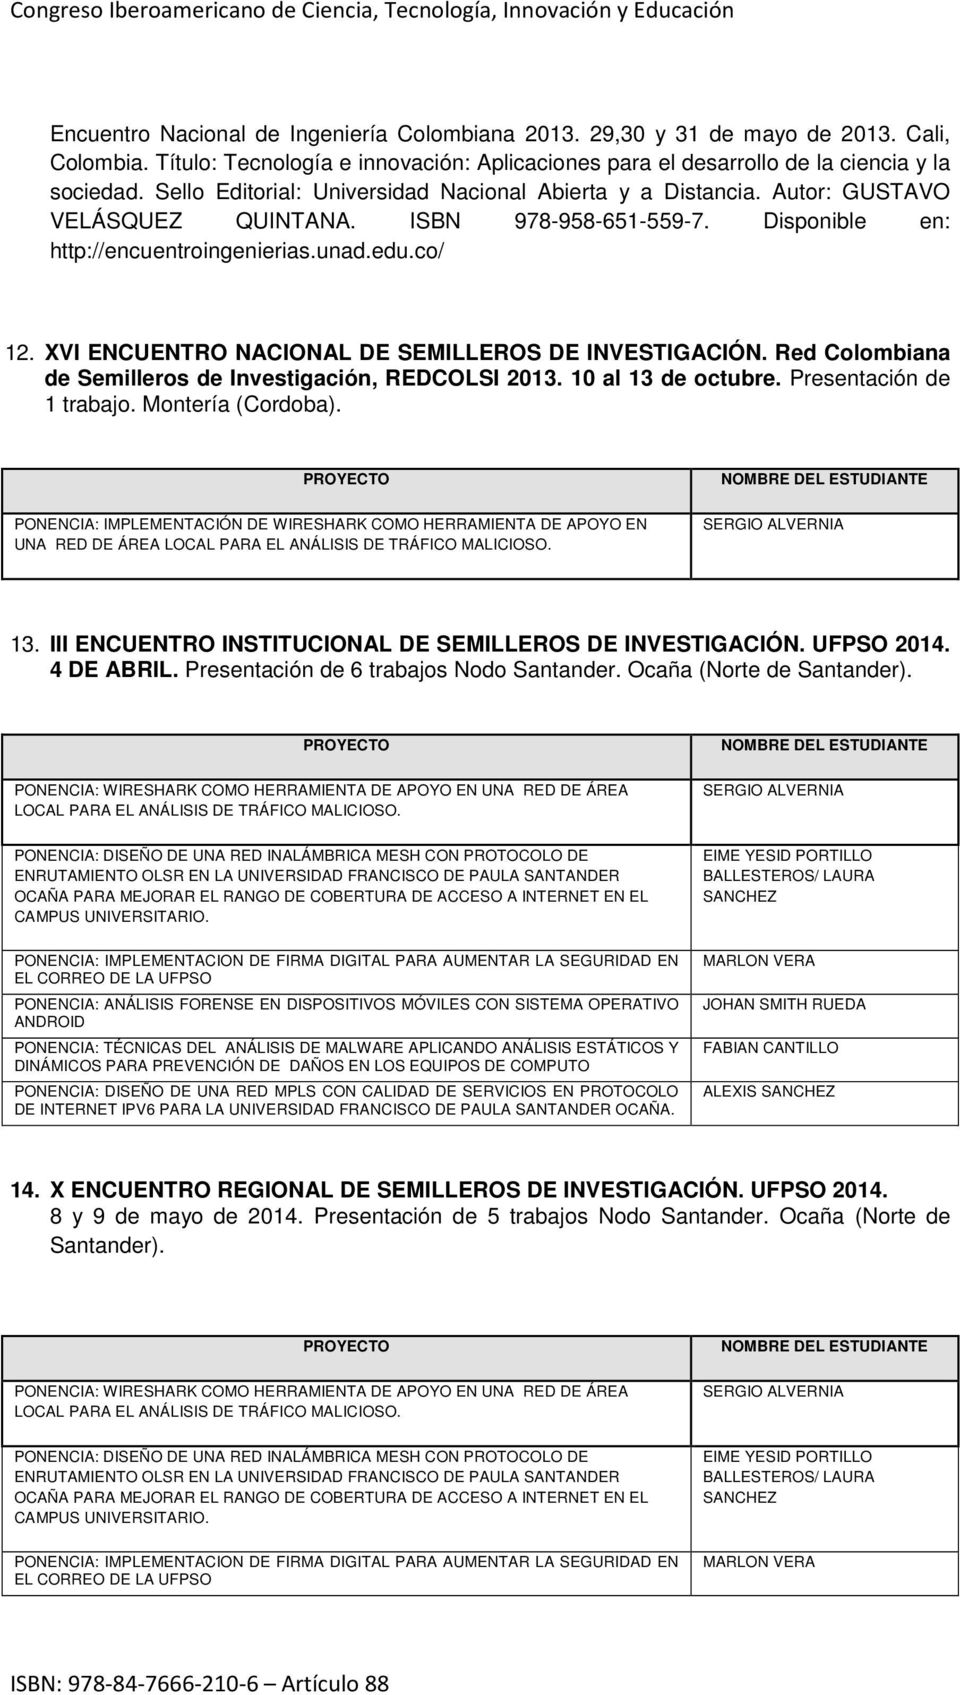 XVI ENCUENTRO NACIONAL DE SEMILLEROS DE INVESTIGACIÓN. Red Colombiana de Semilleros de Investigación, REDCOLSI 2013. 10 al 13 de octubre. Presentación de 1 trabajo. Montería (Cordoba).